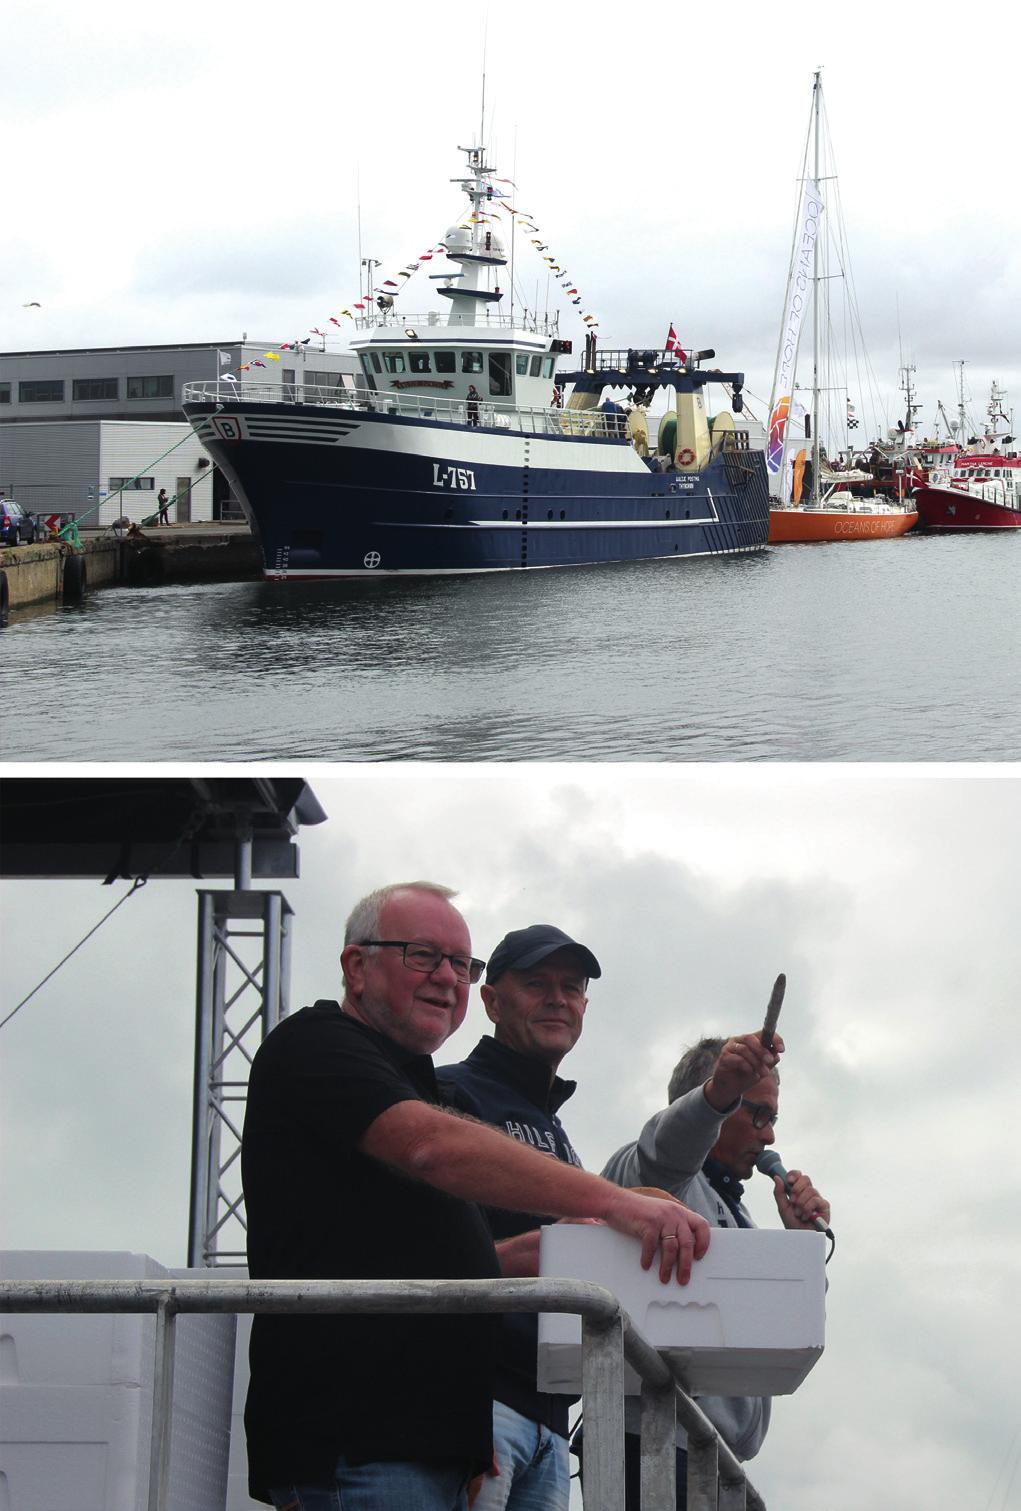 Sommerbegivenheder på havnen i Thyborøn Havnen danner hvert år ramme for flere festlige begivenheder gennem sommeren.